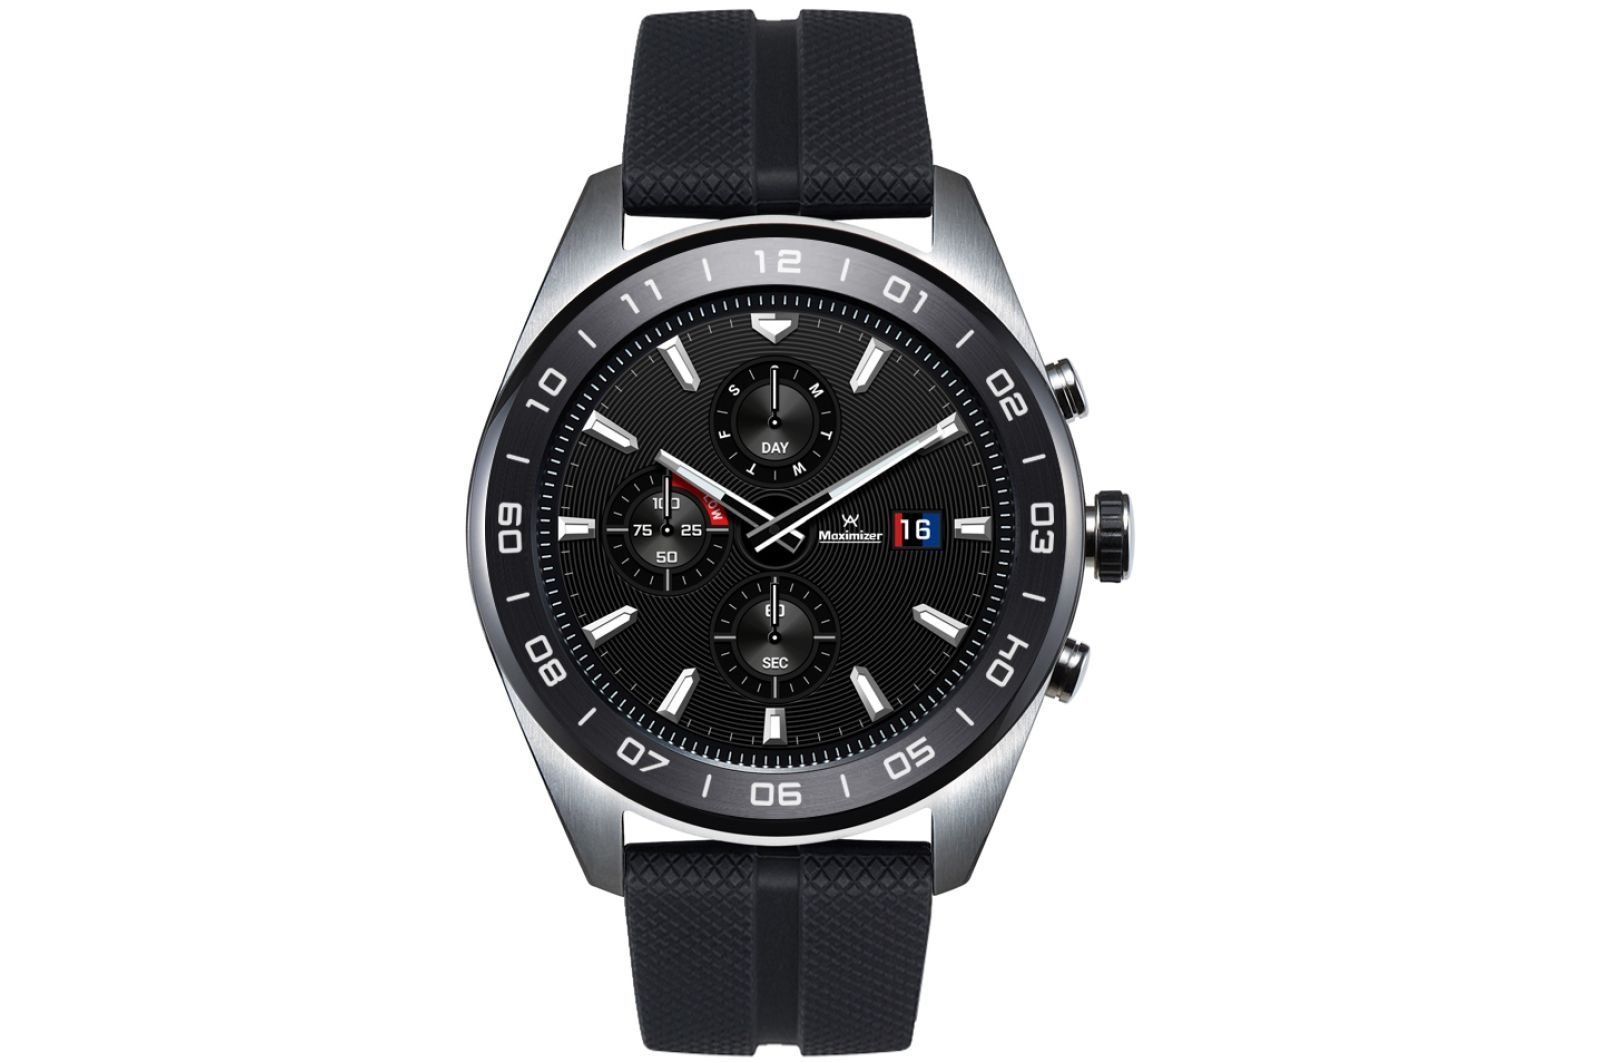 Jam tangan pintar LG Watch W7 - kelebihan dan kekurangan